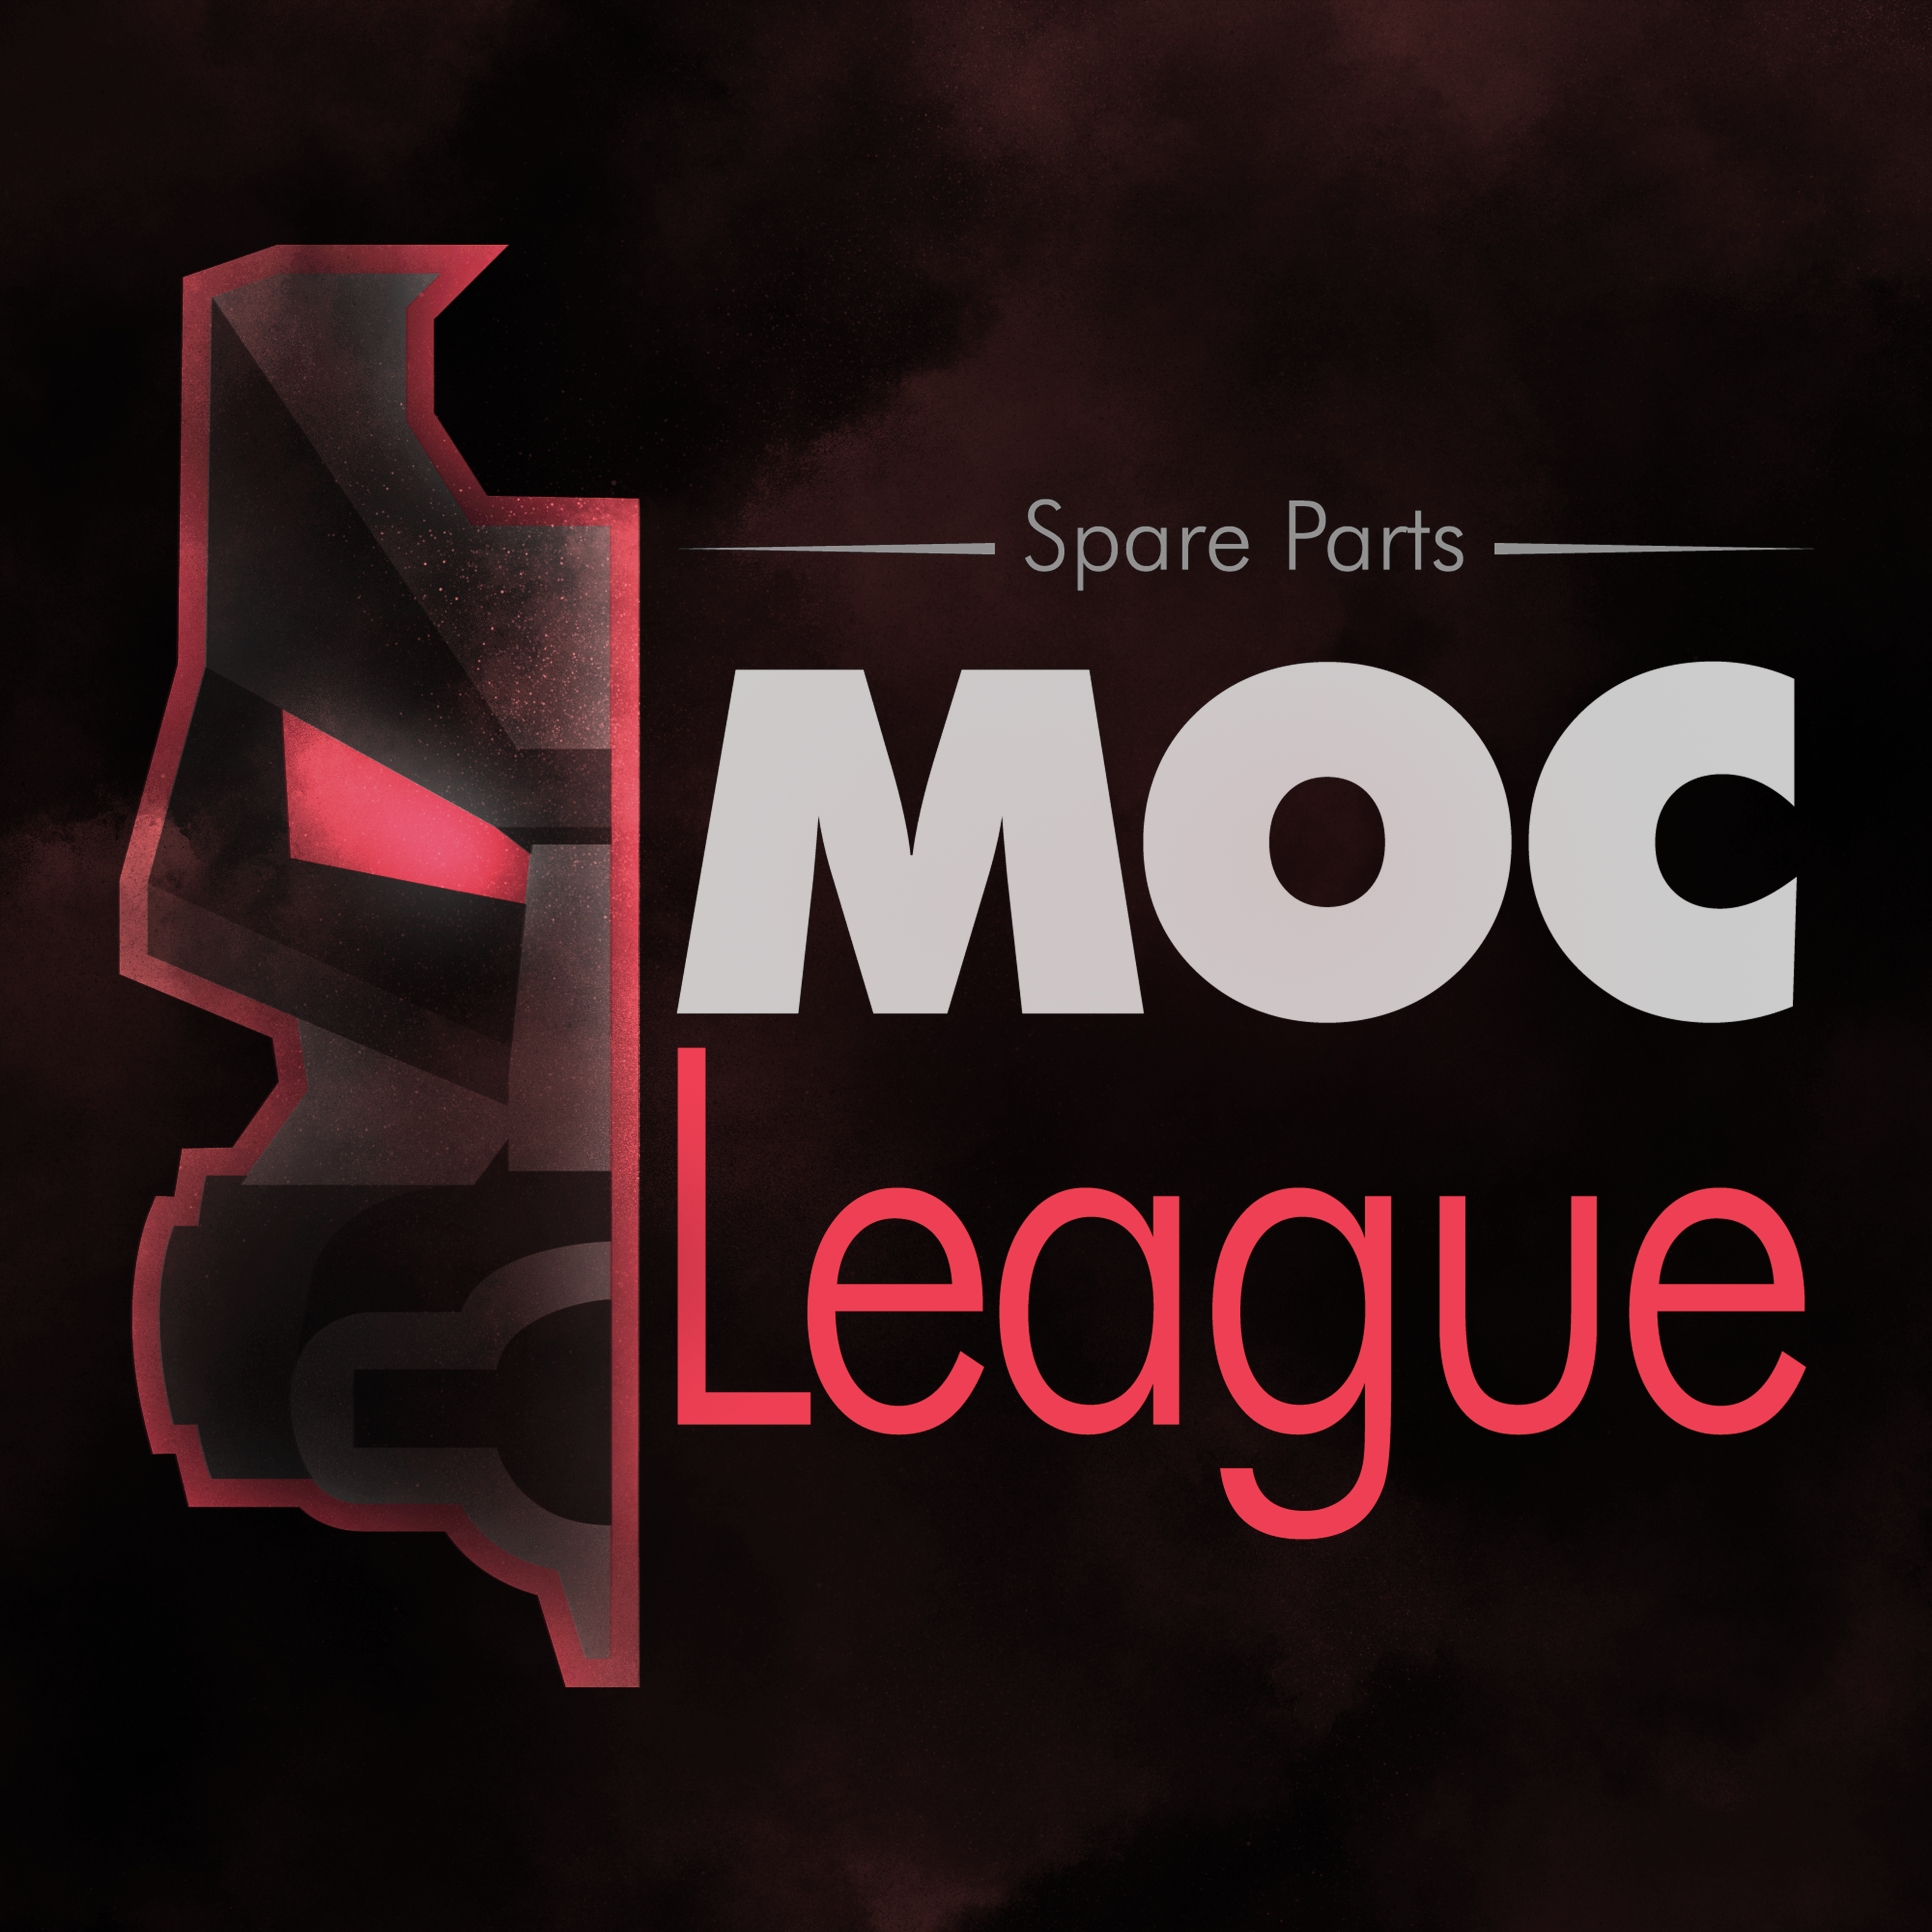 Anche quest’anno ritorna la Moc League